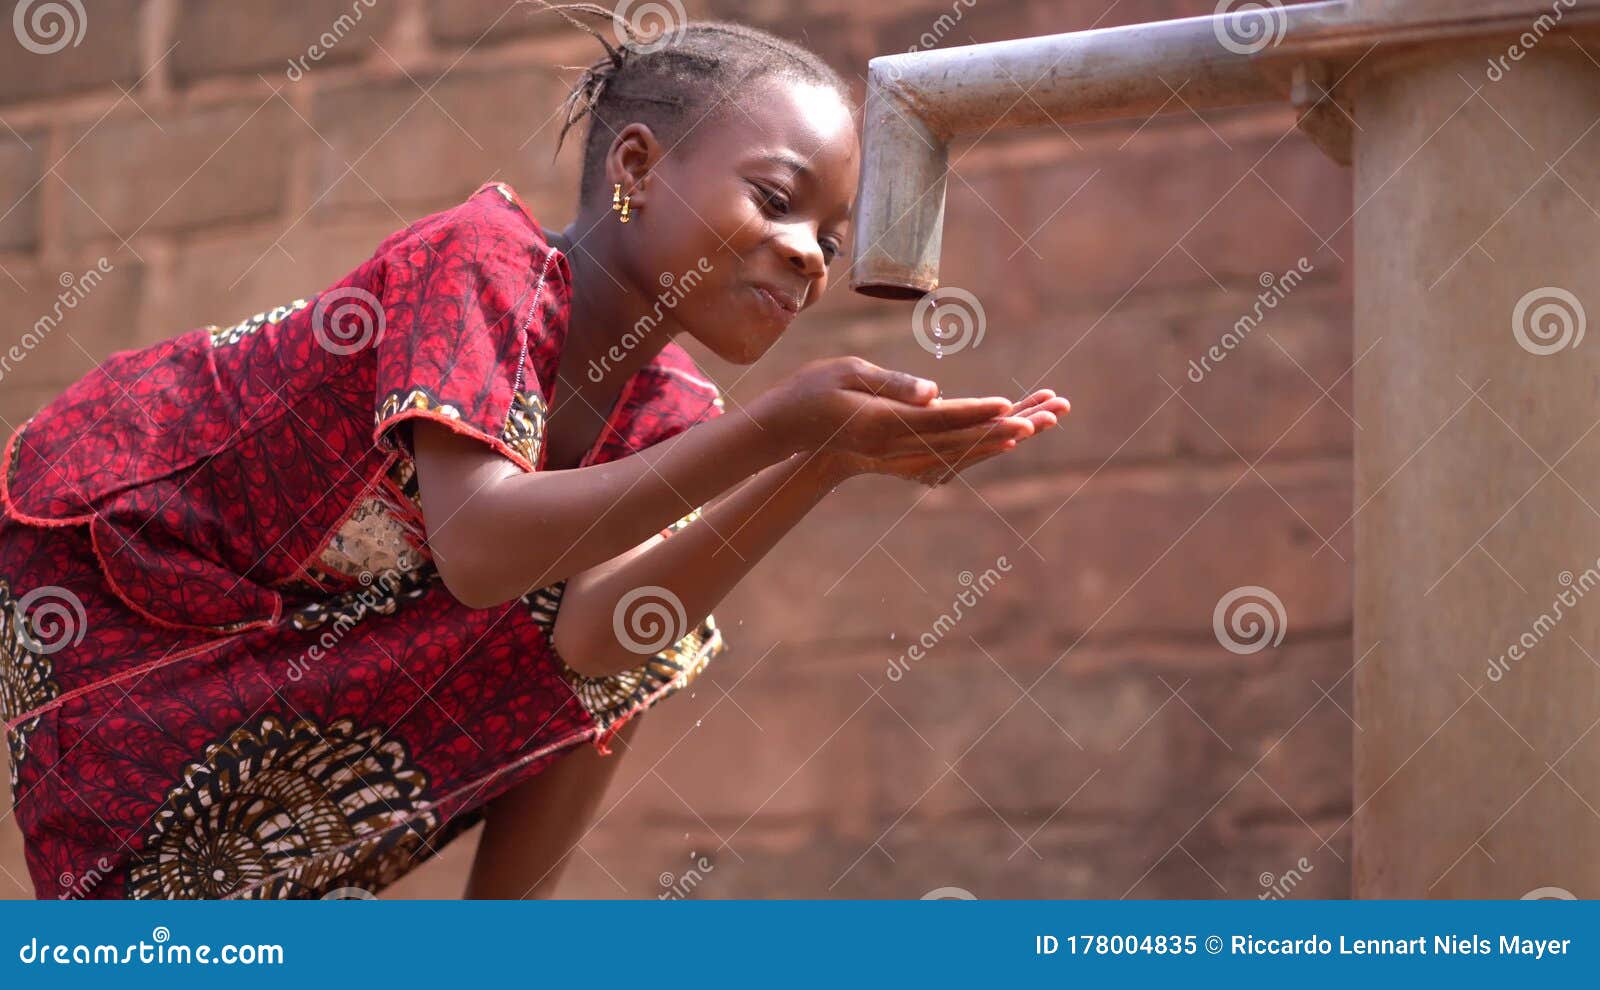 黑人非洲女孩喝水高清摄影大图-千库网